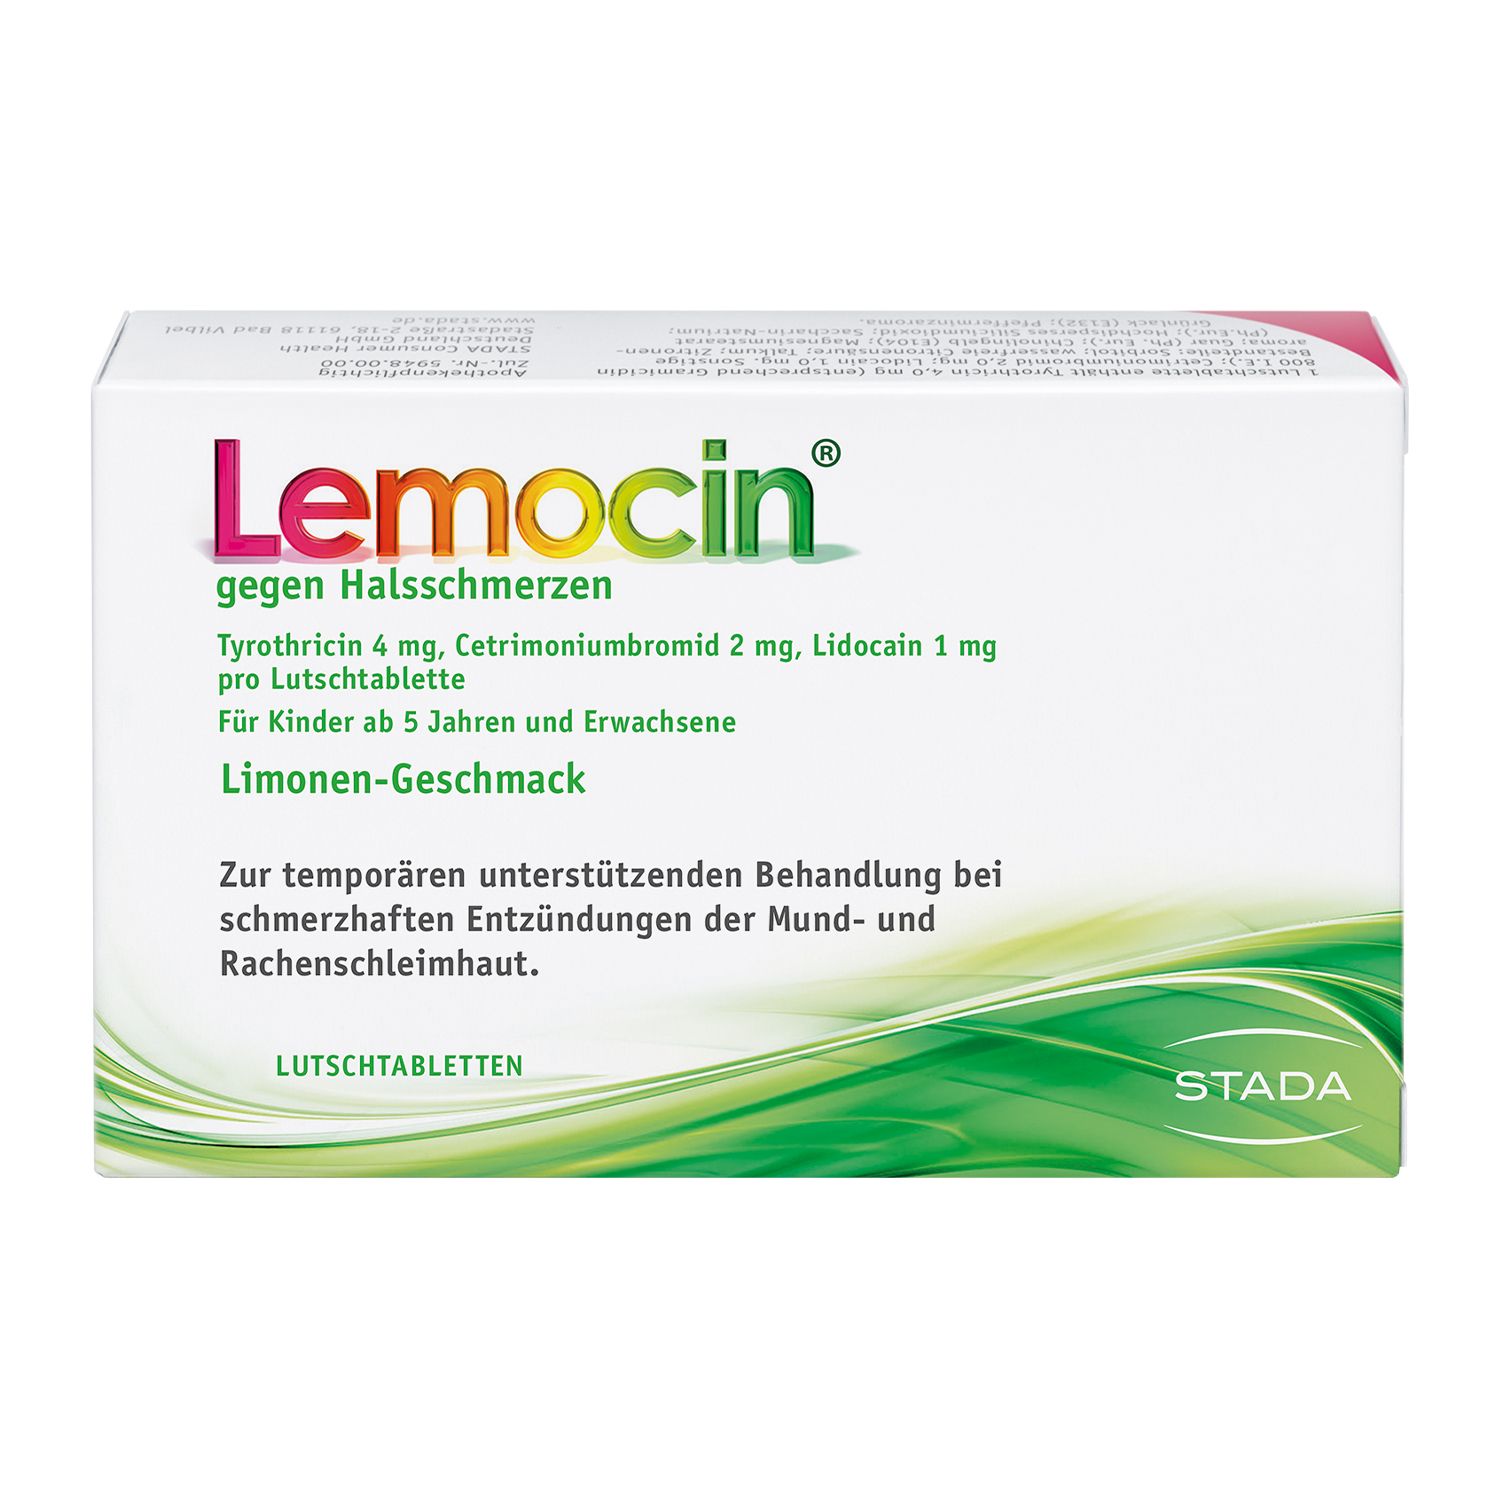 Lemocin® gegen Halsschmerzen Limettengeschmack ab 5 Jahren